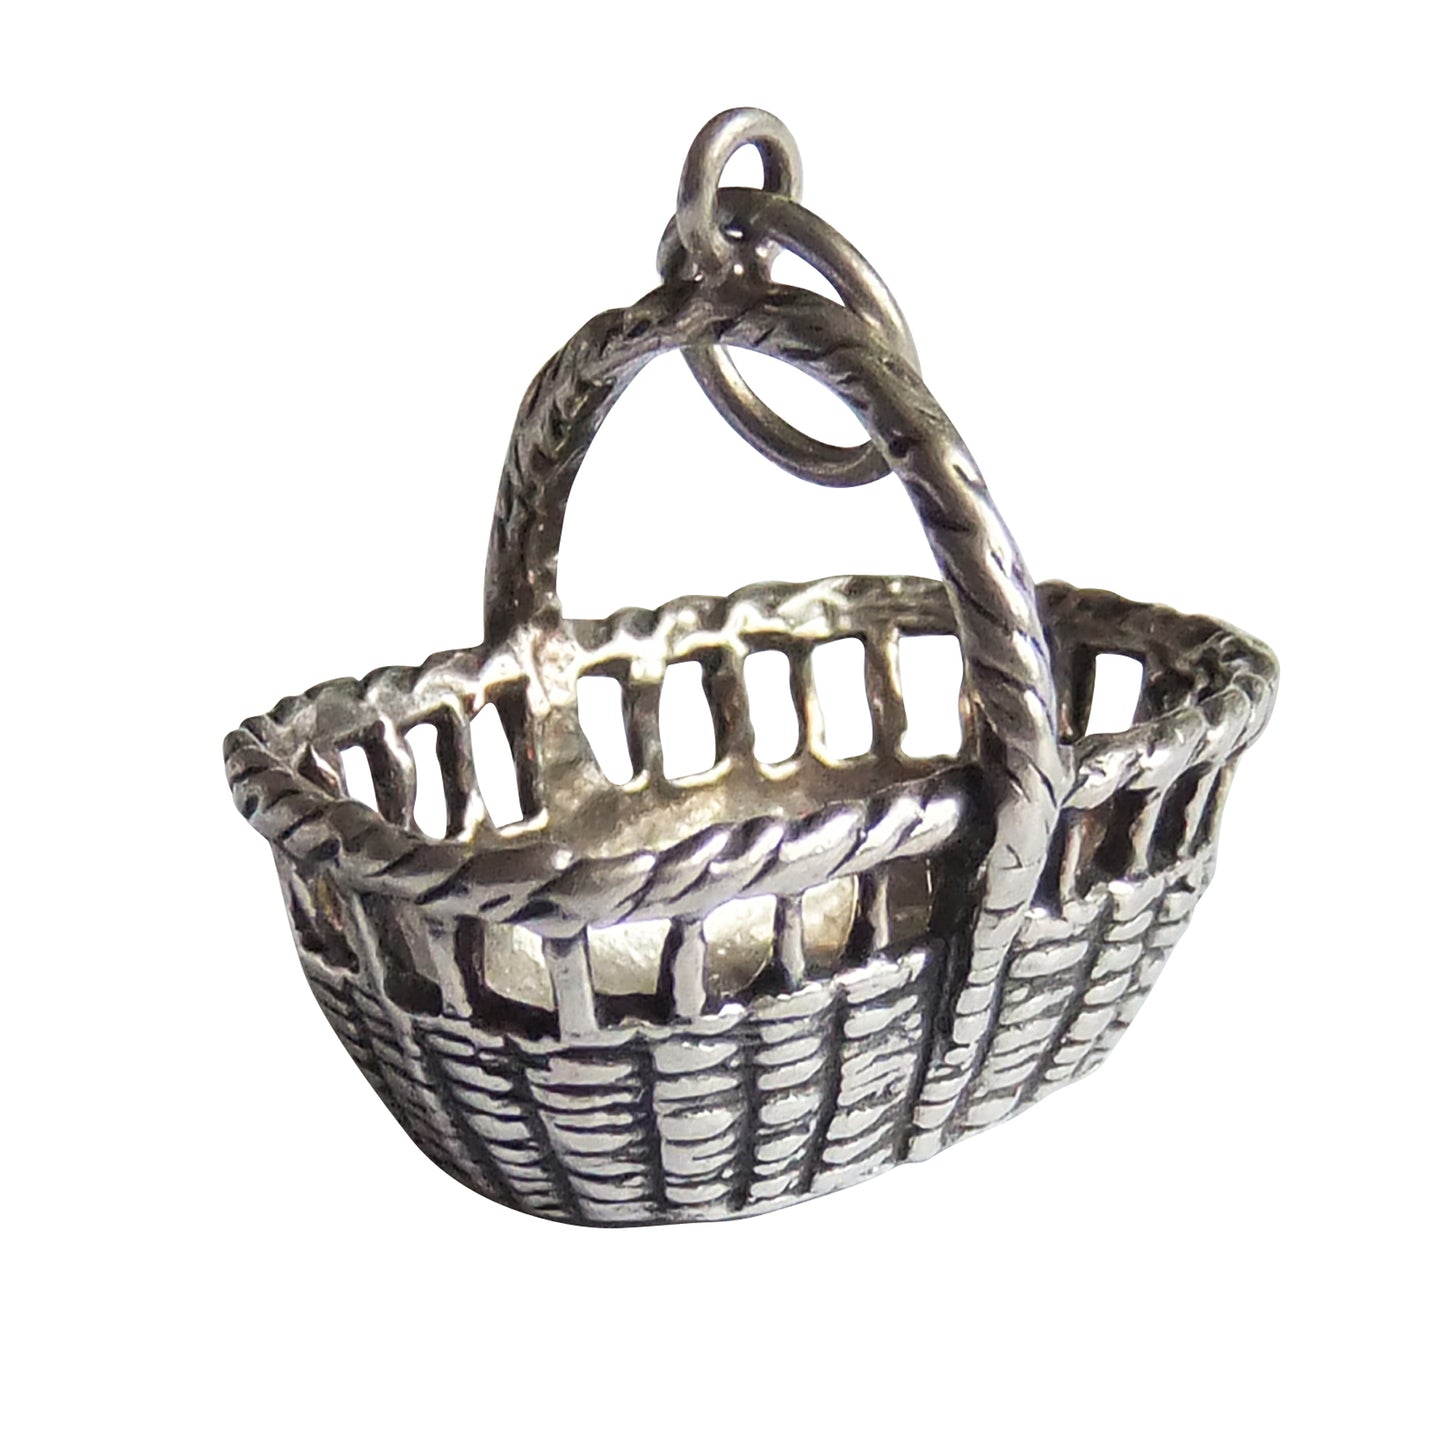 Vintage sterling silver basket charm by REU